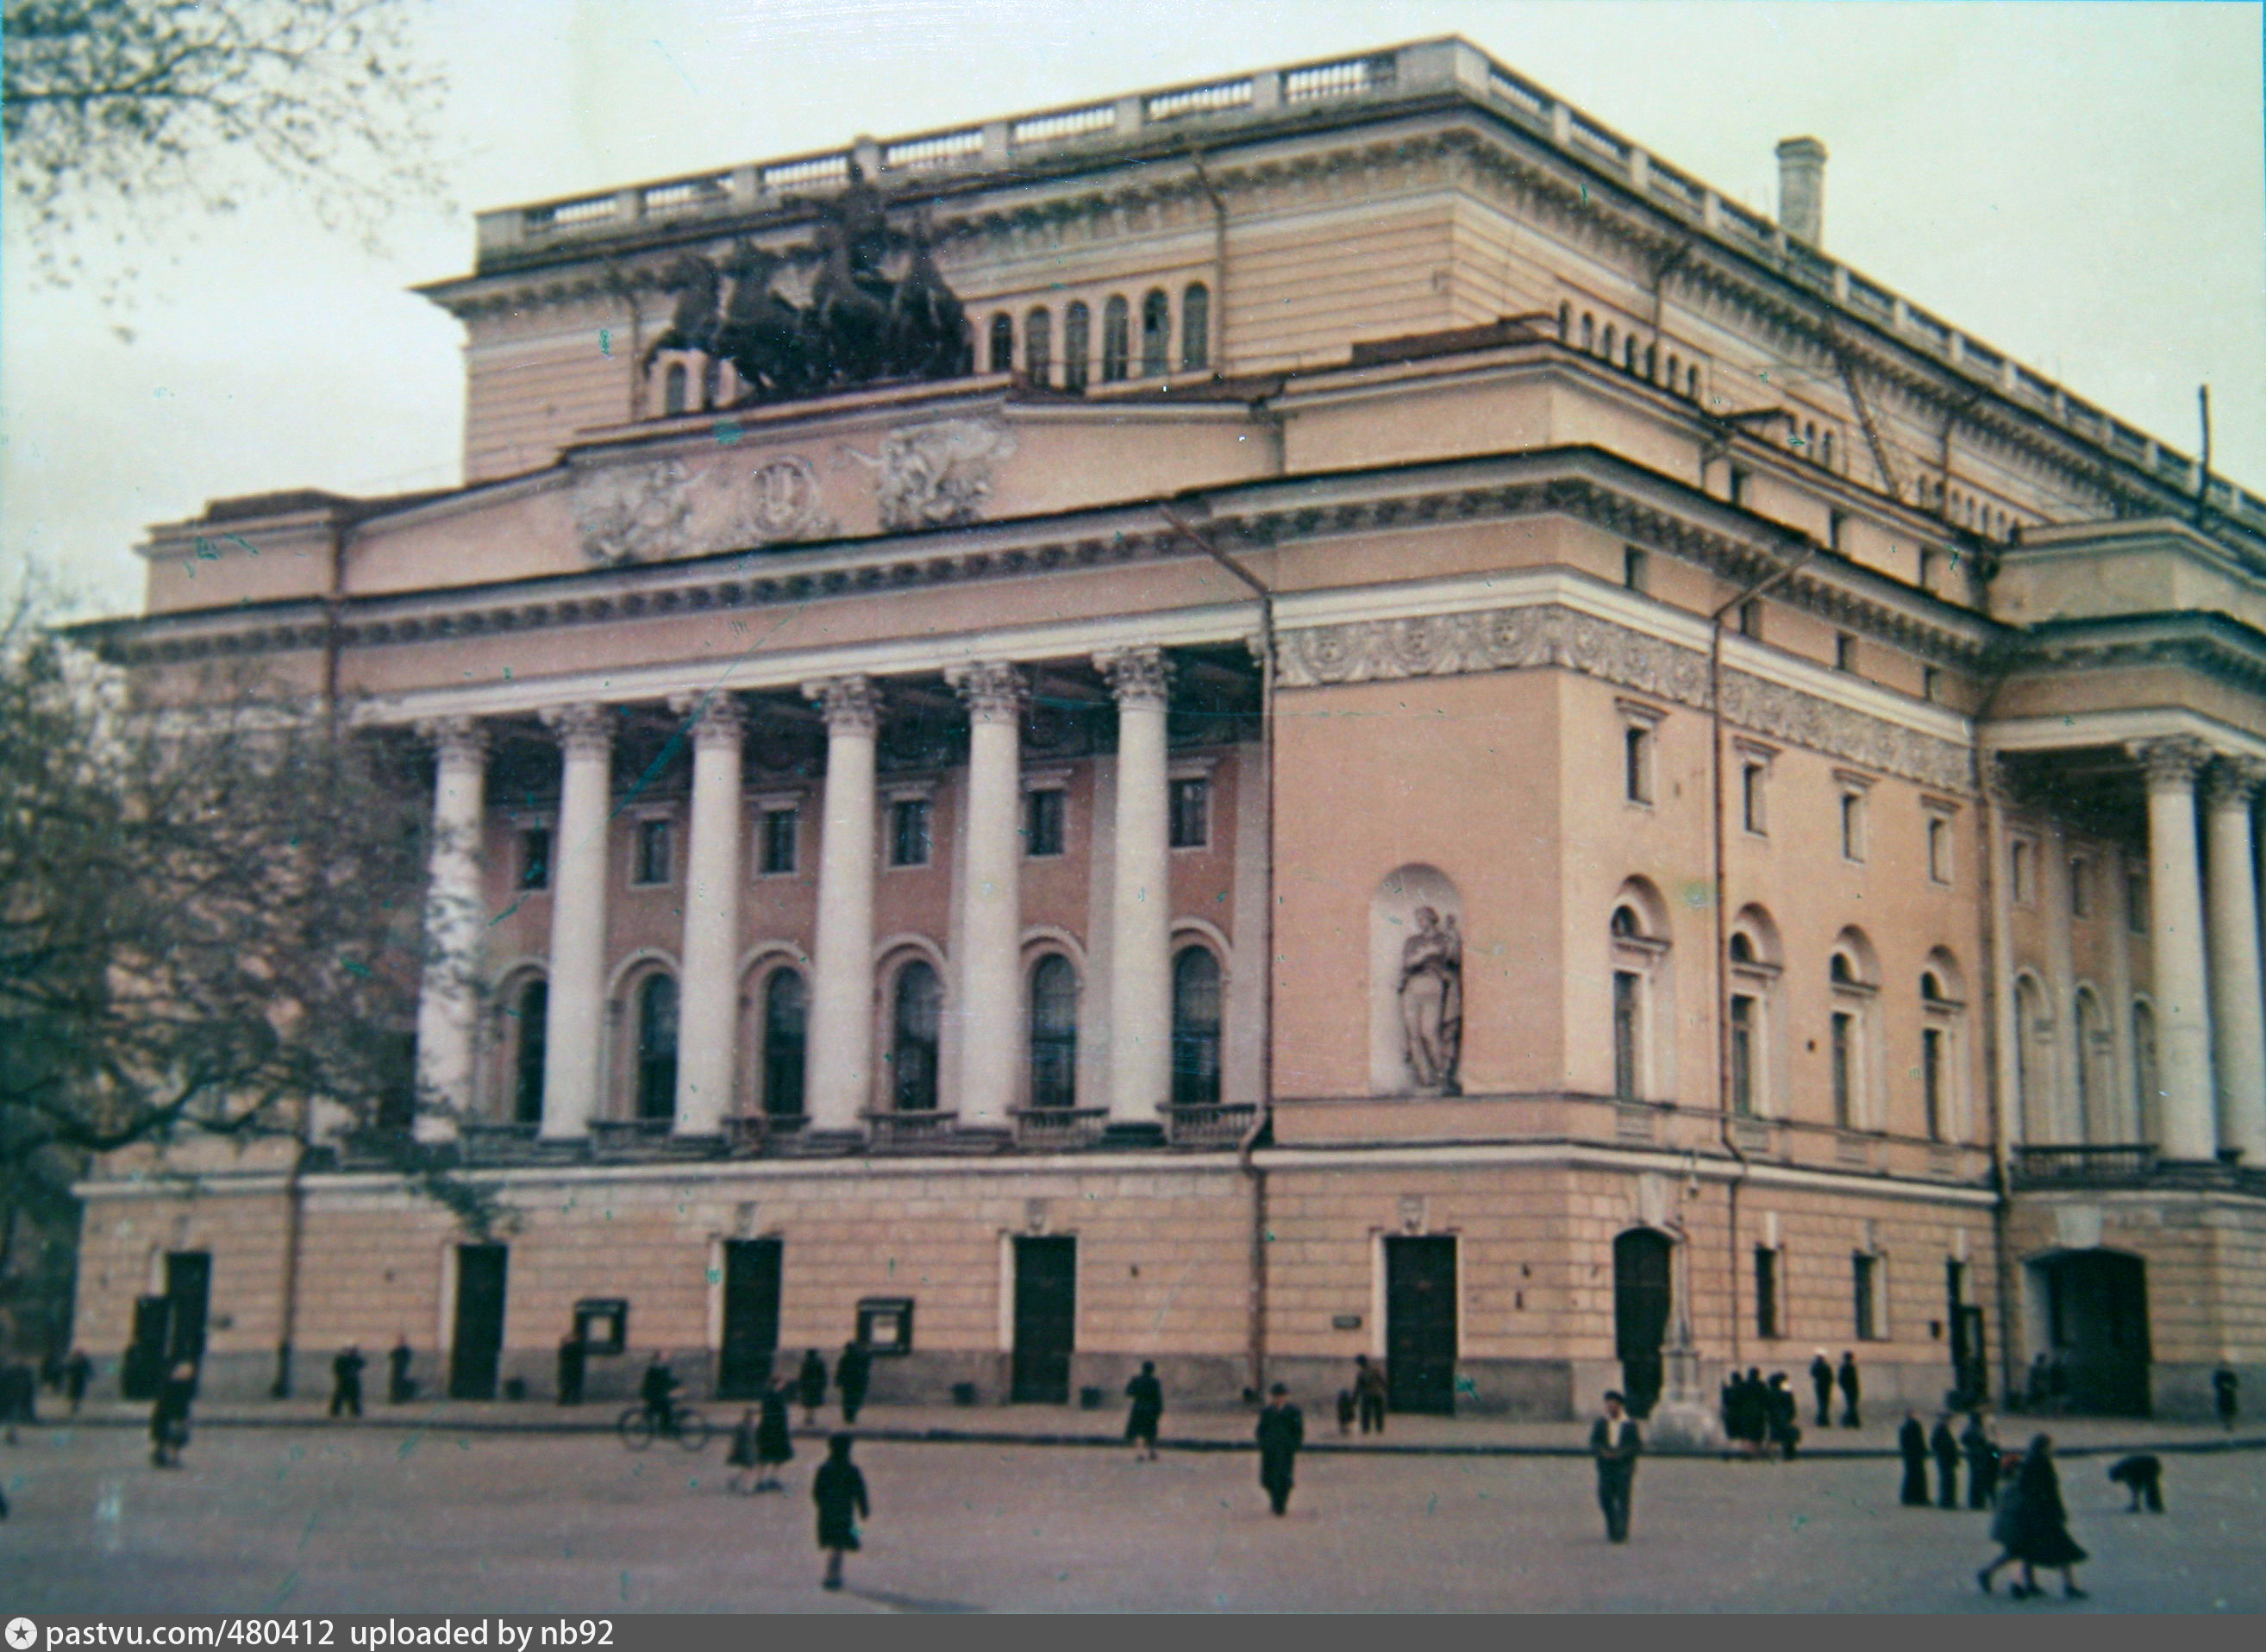 пушкинский театр во владивостоке